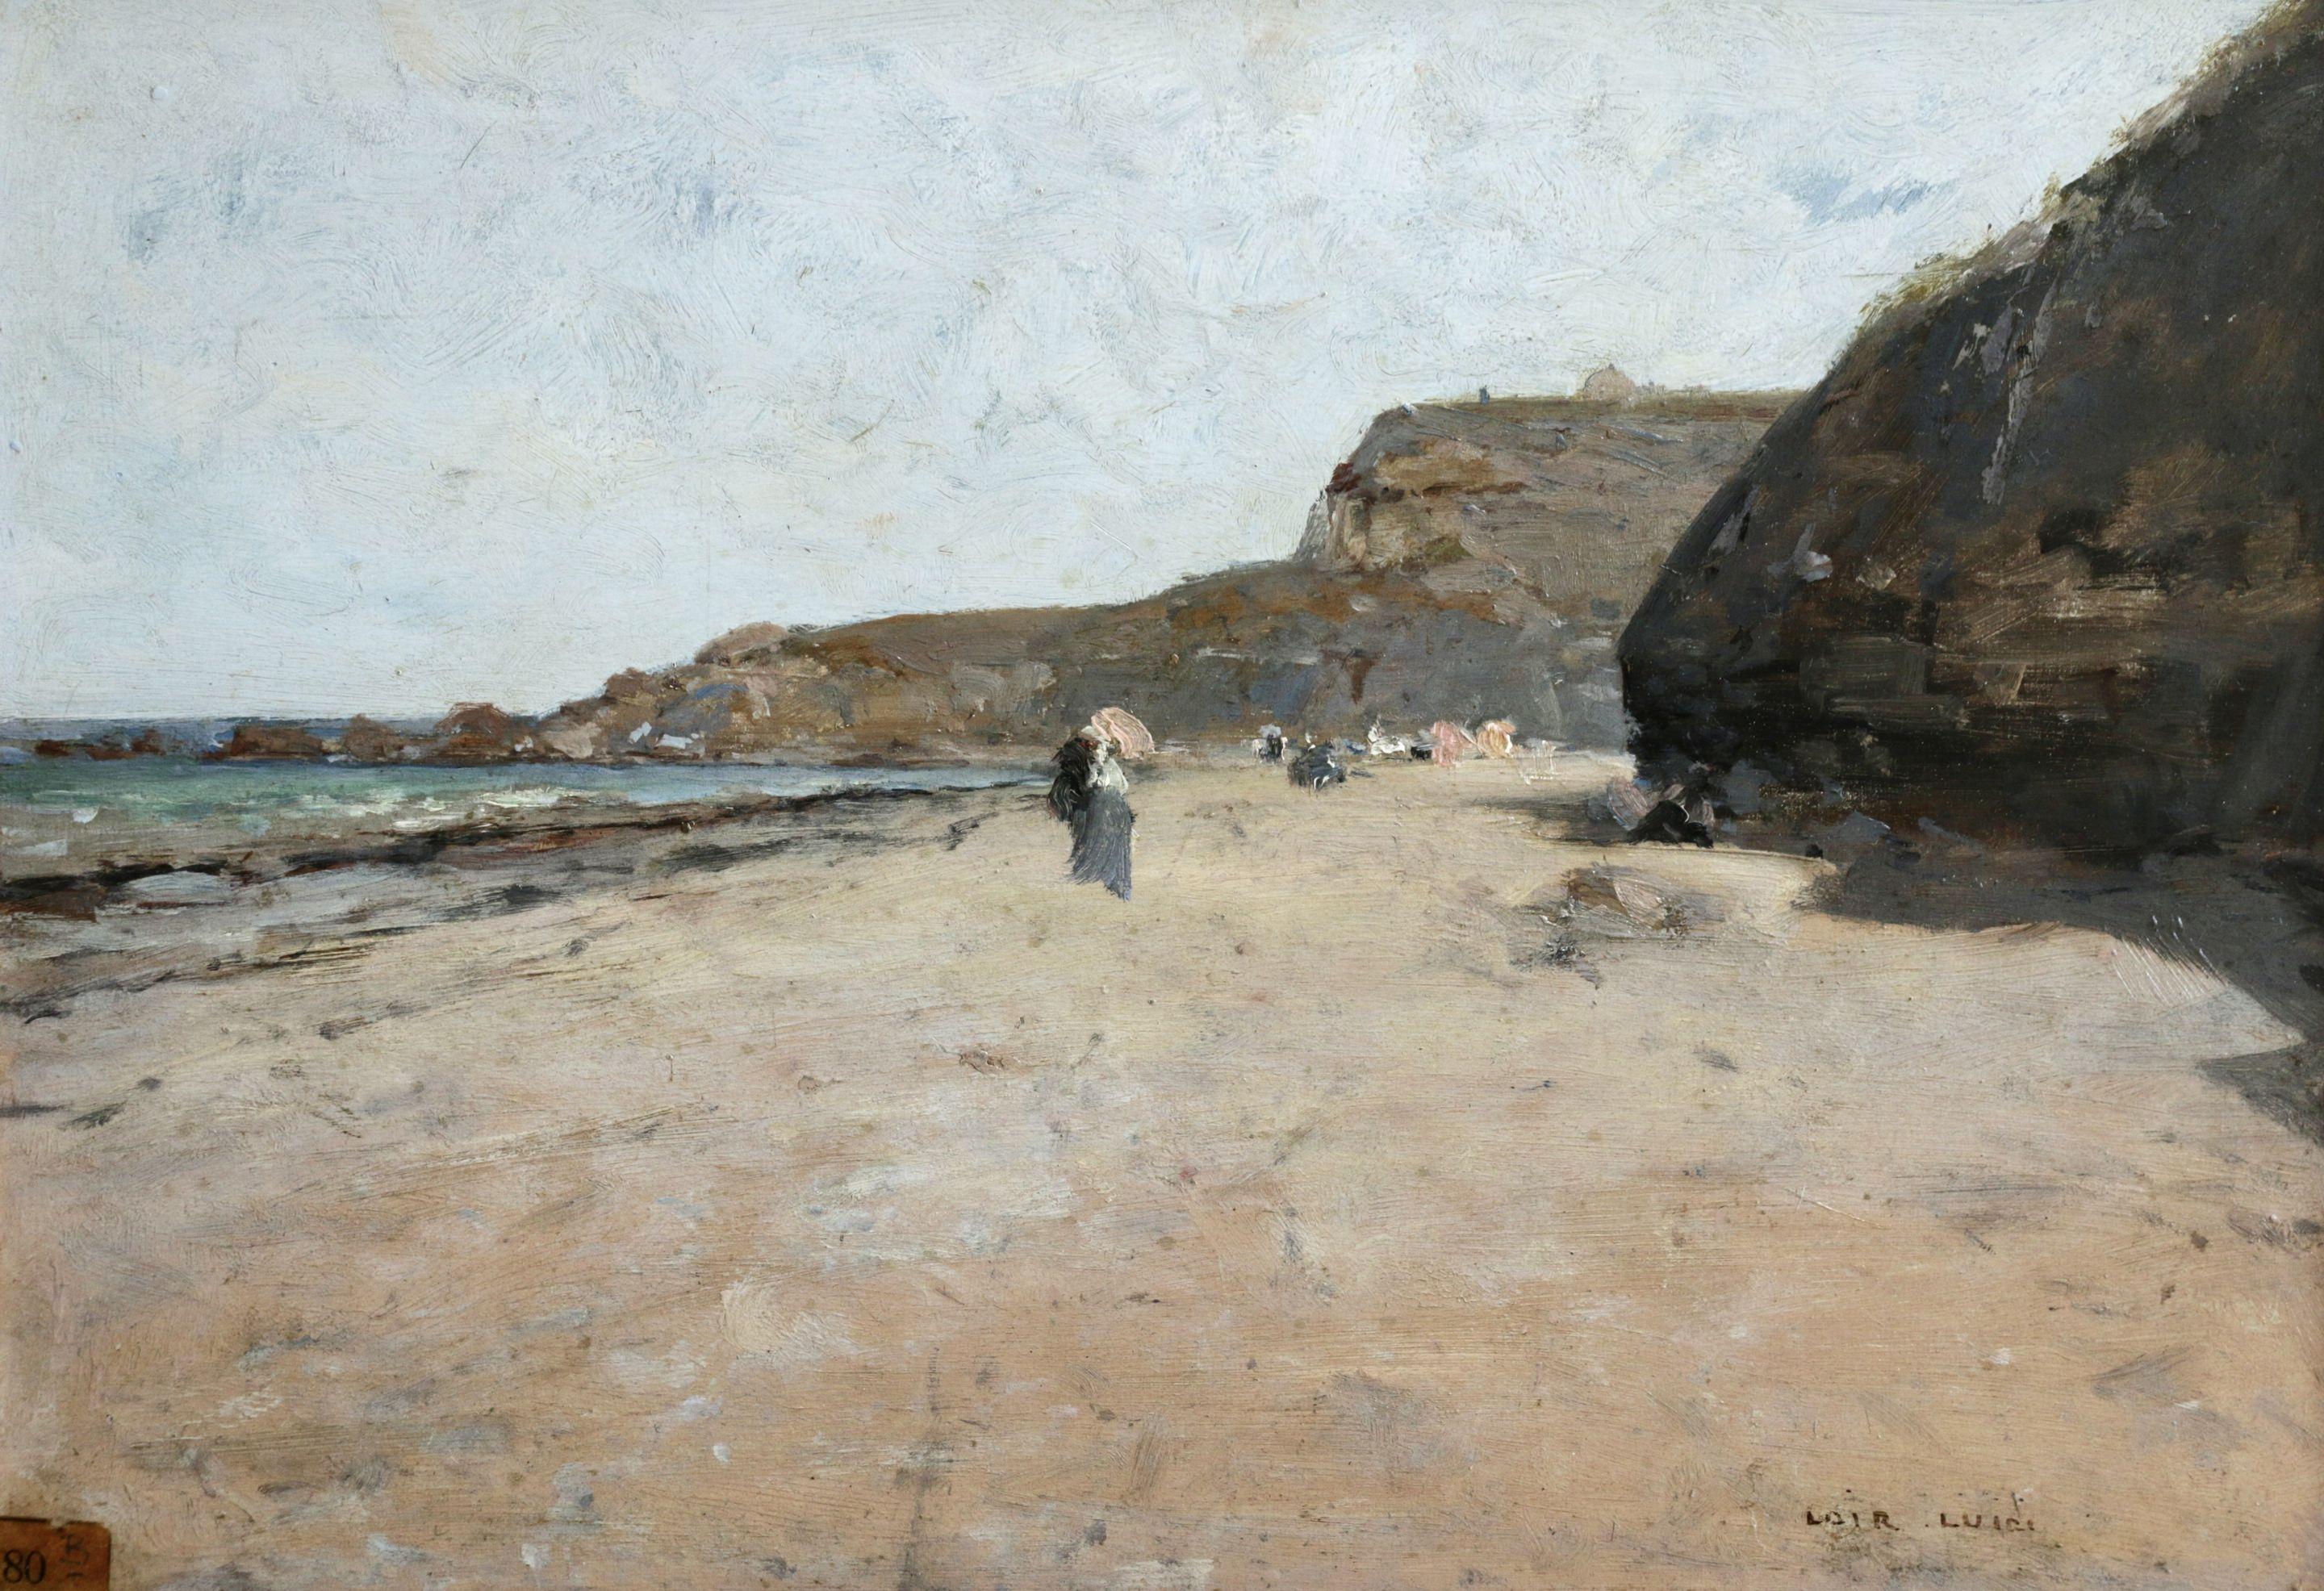 Luigi Loir Landscape Painting - "Promenade sur la Plage" Loir C.19th French Impressionist Coastal Seascape